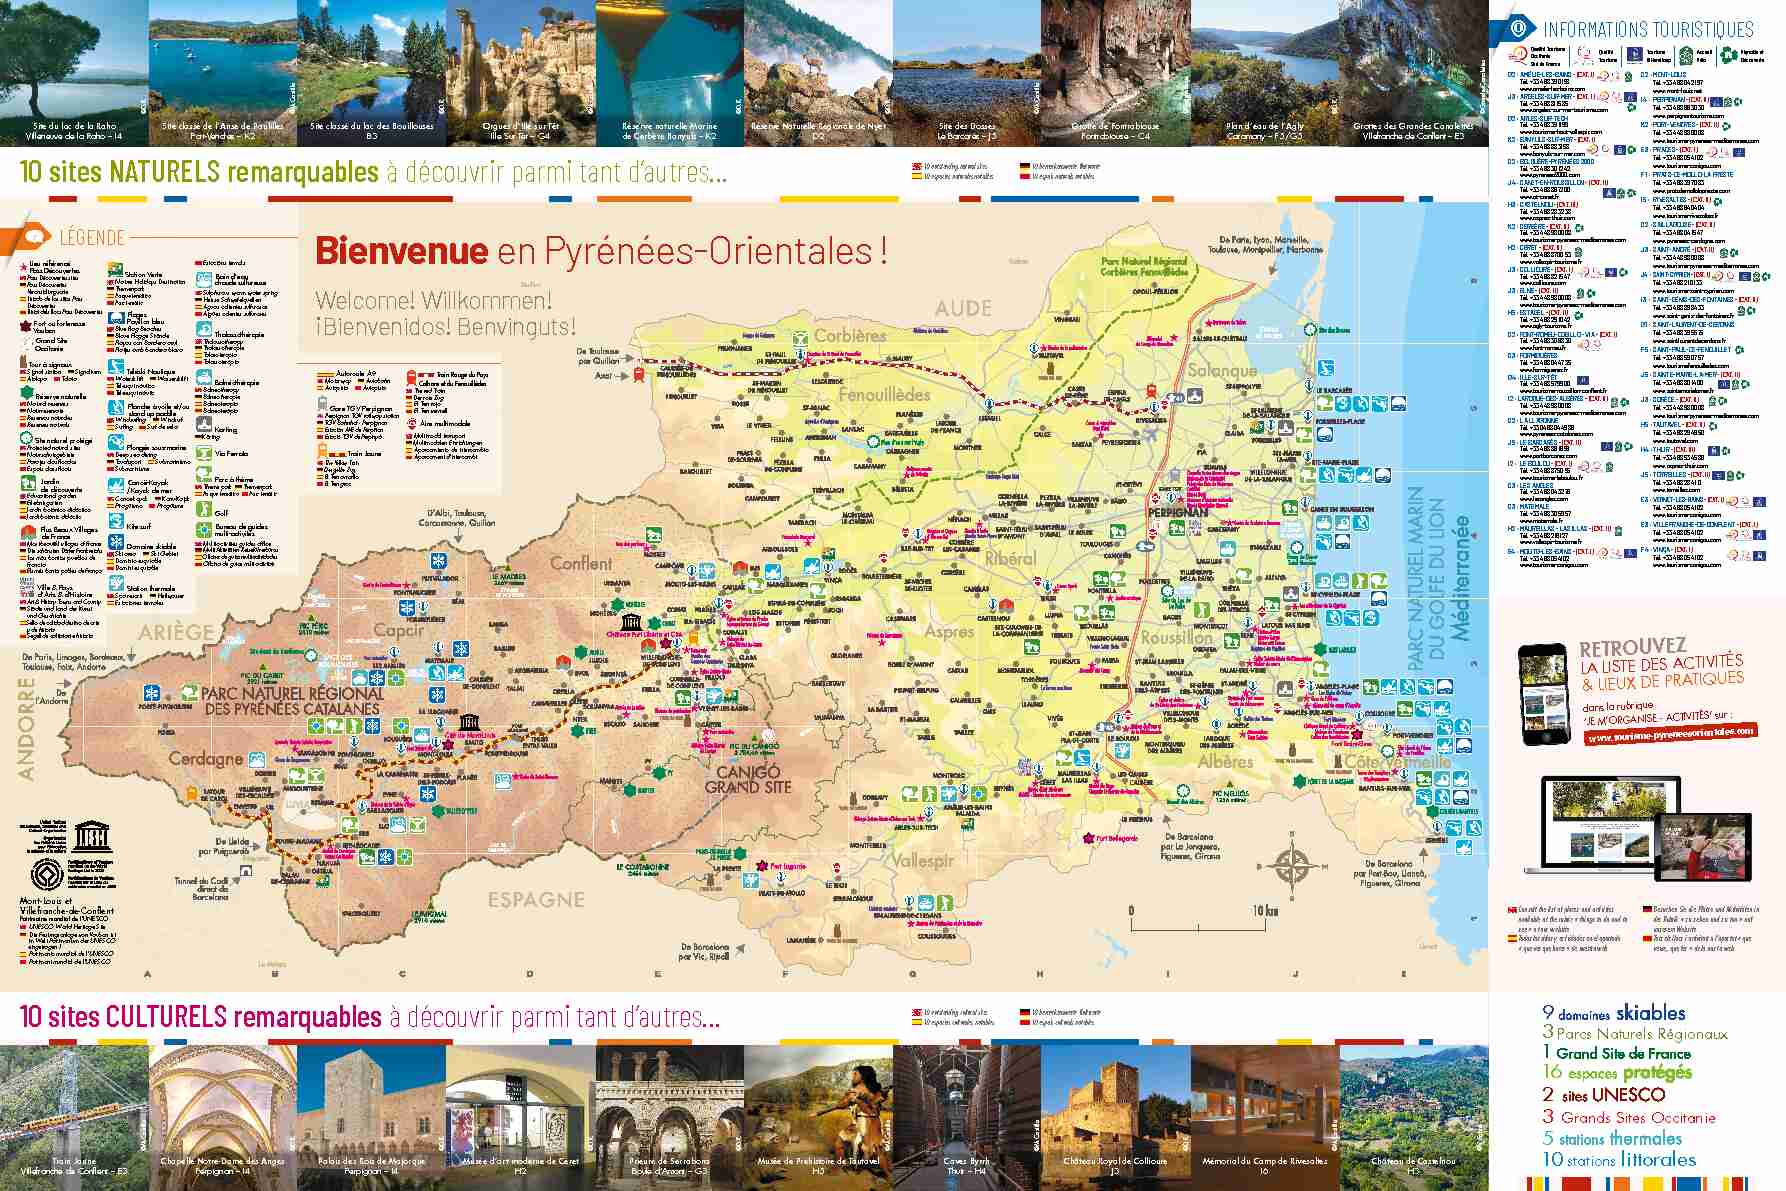 Bienvenue en Pyrénées-Orientales !